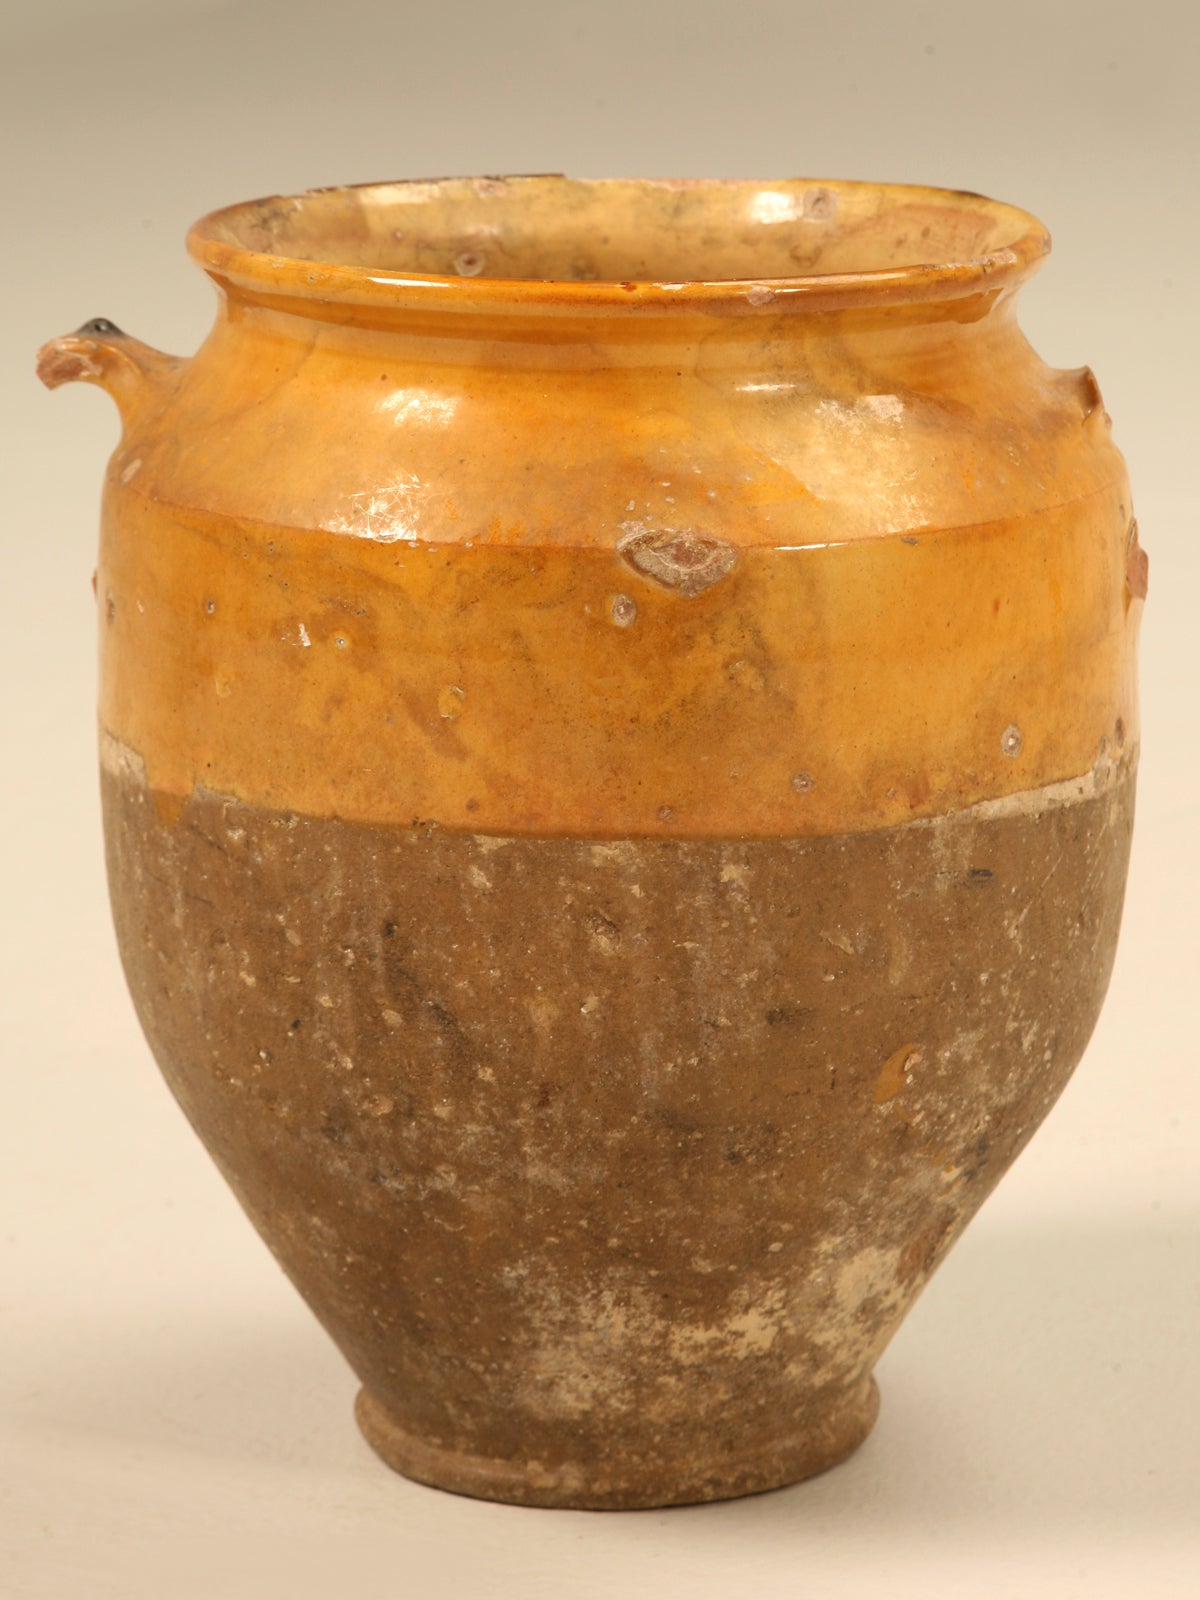 Original Antique French Confit Pot w/Warm Golden Glaze